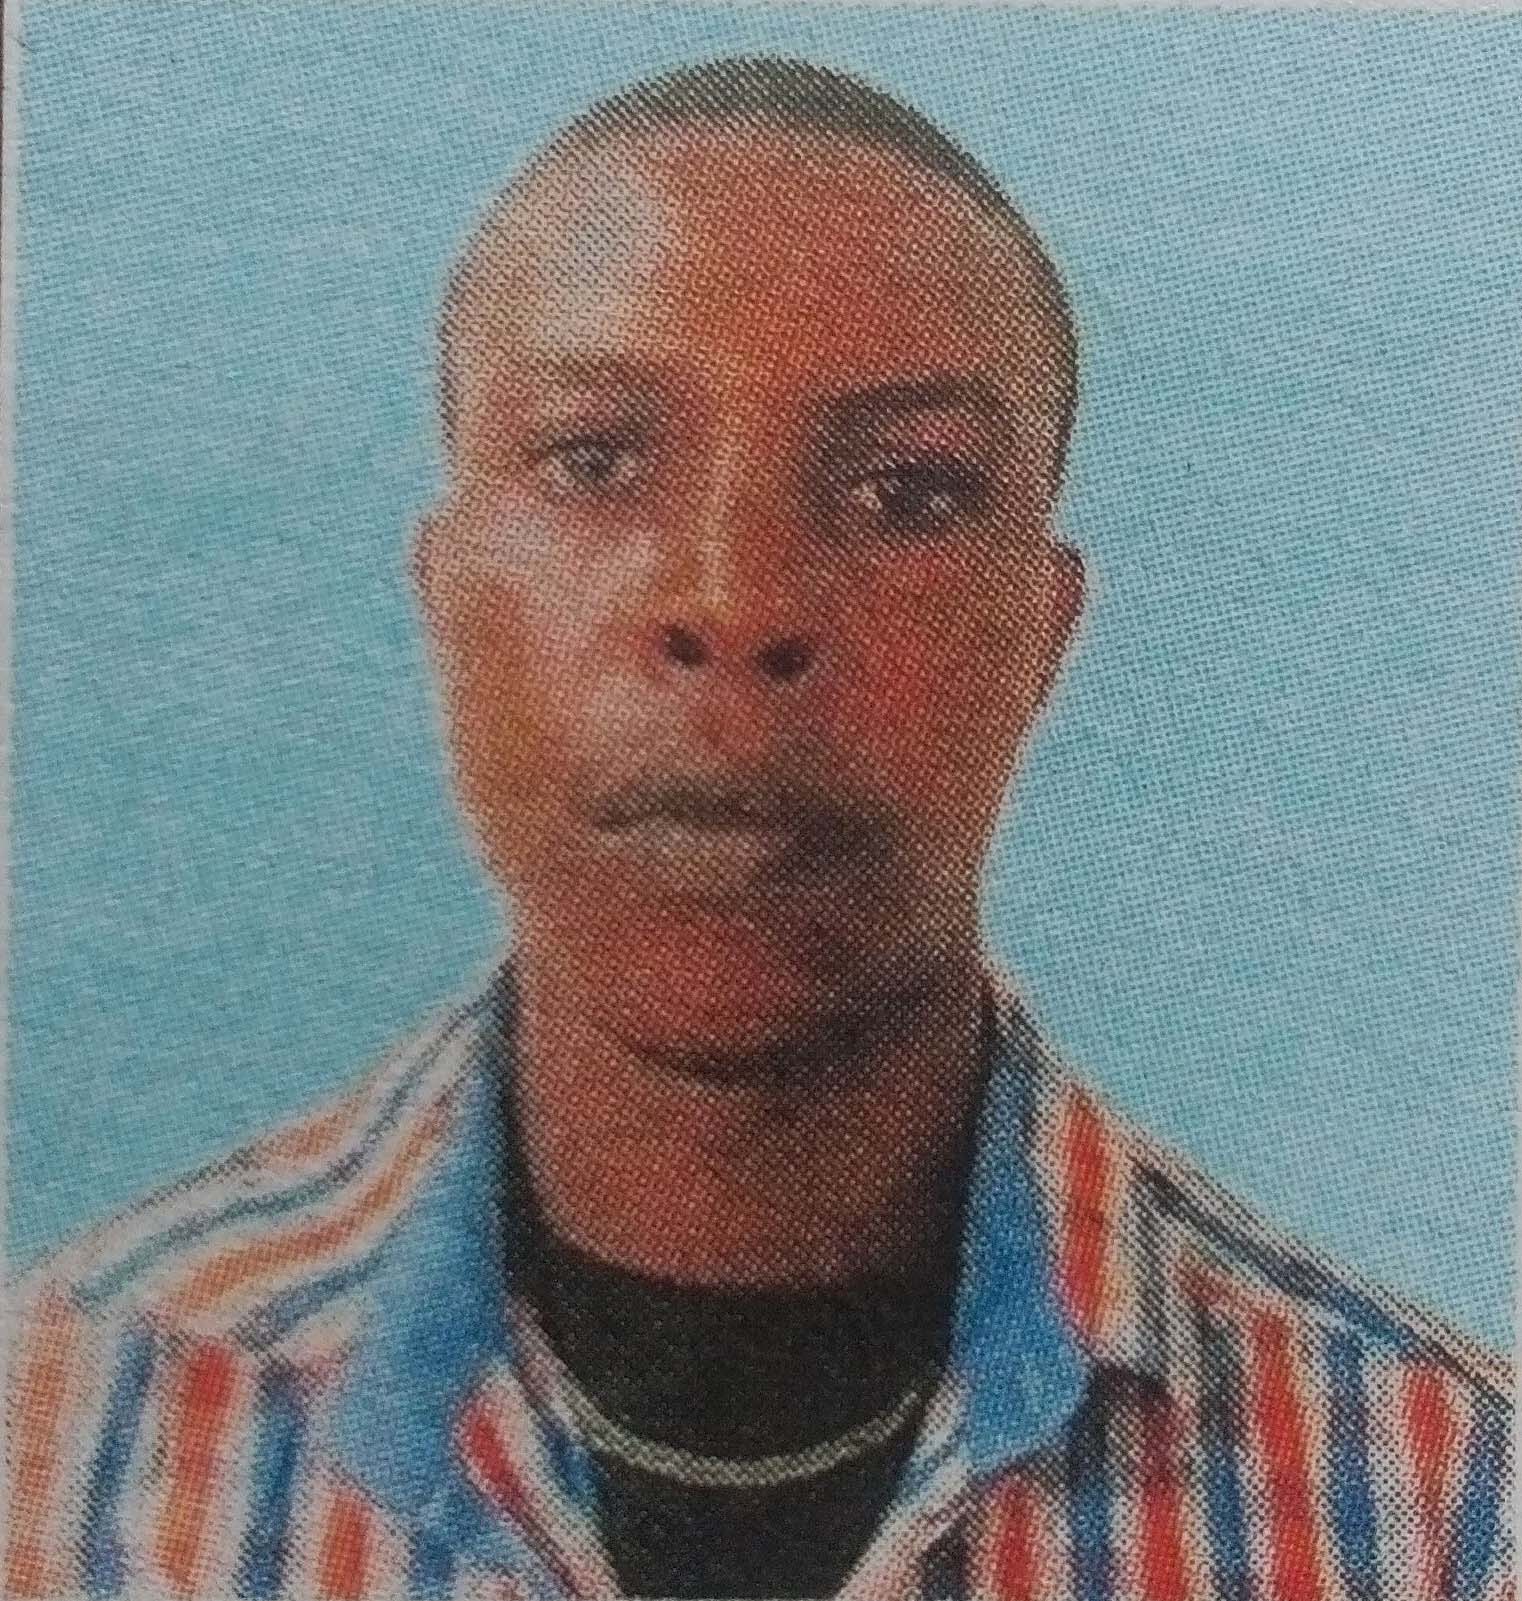 Obituary Image of Joshua Tei Kamuti Mutuse